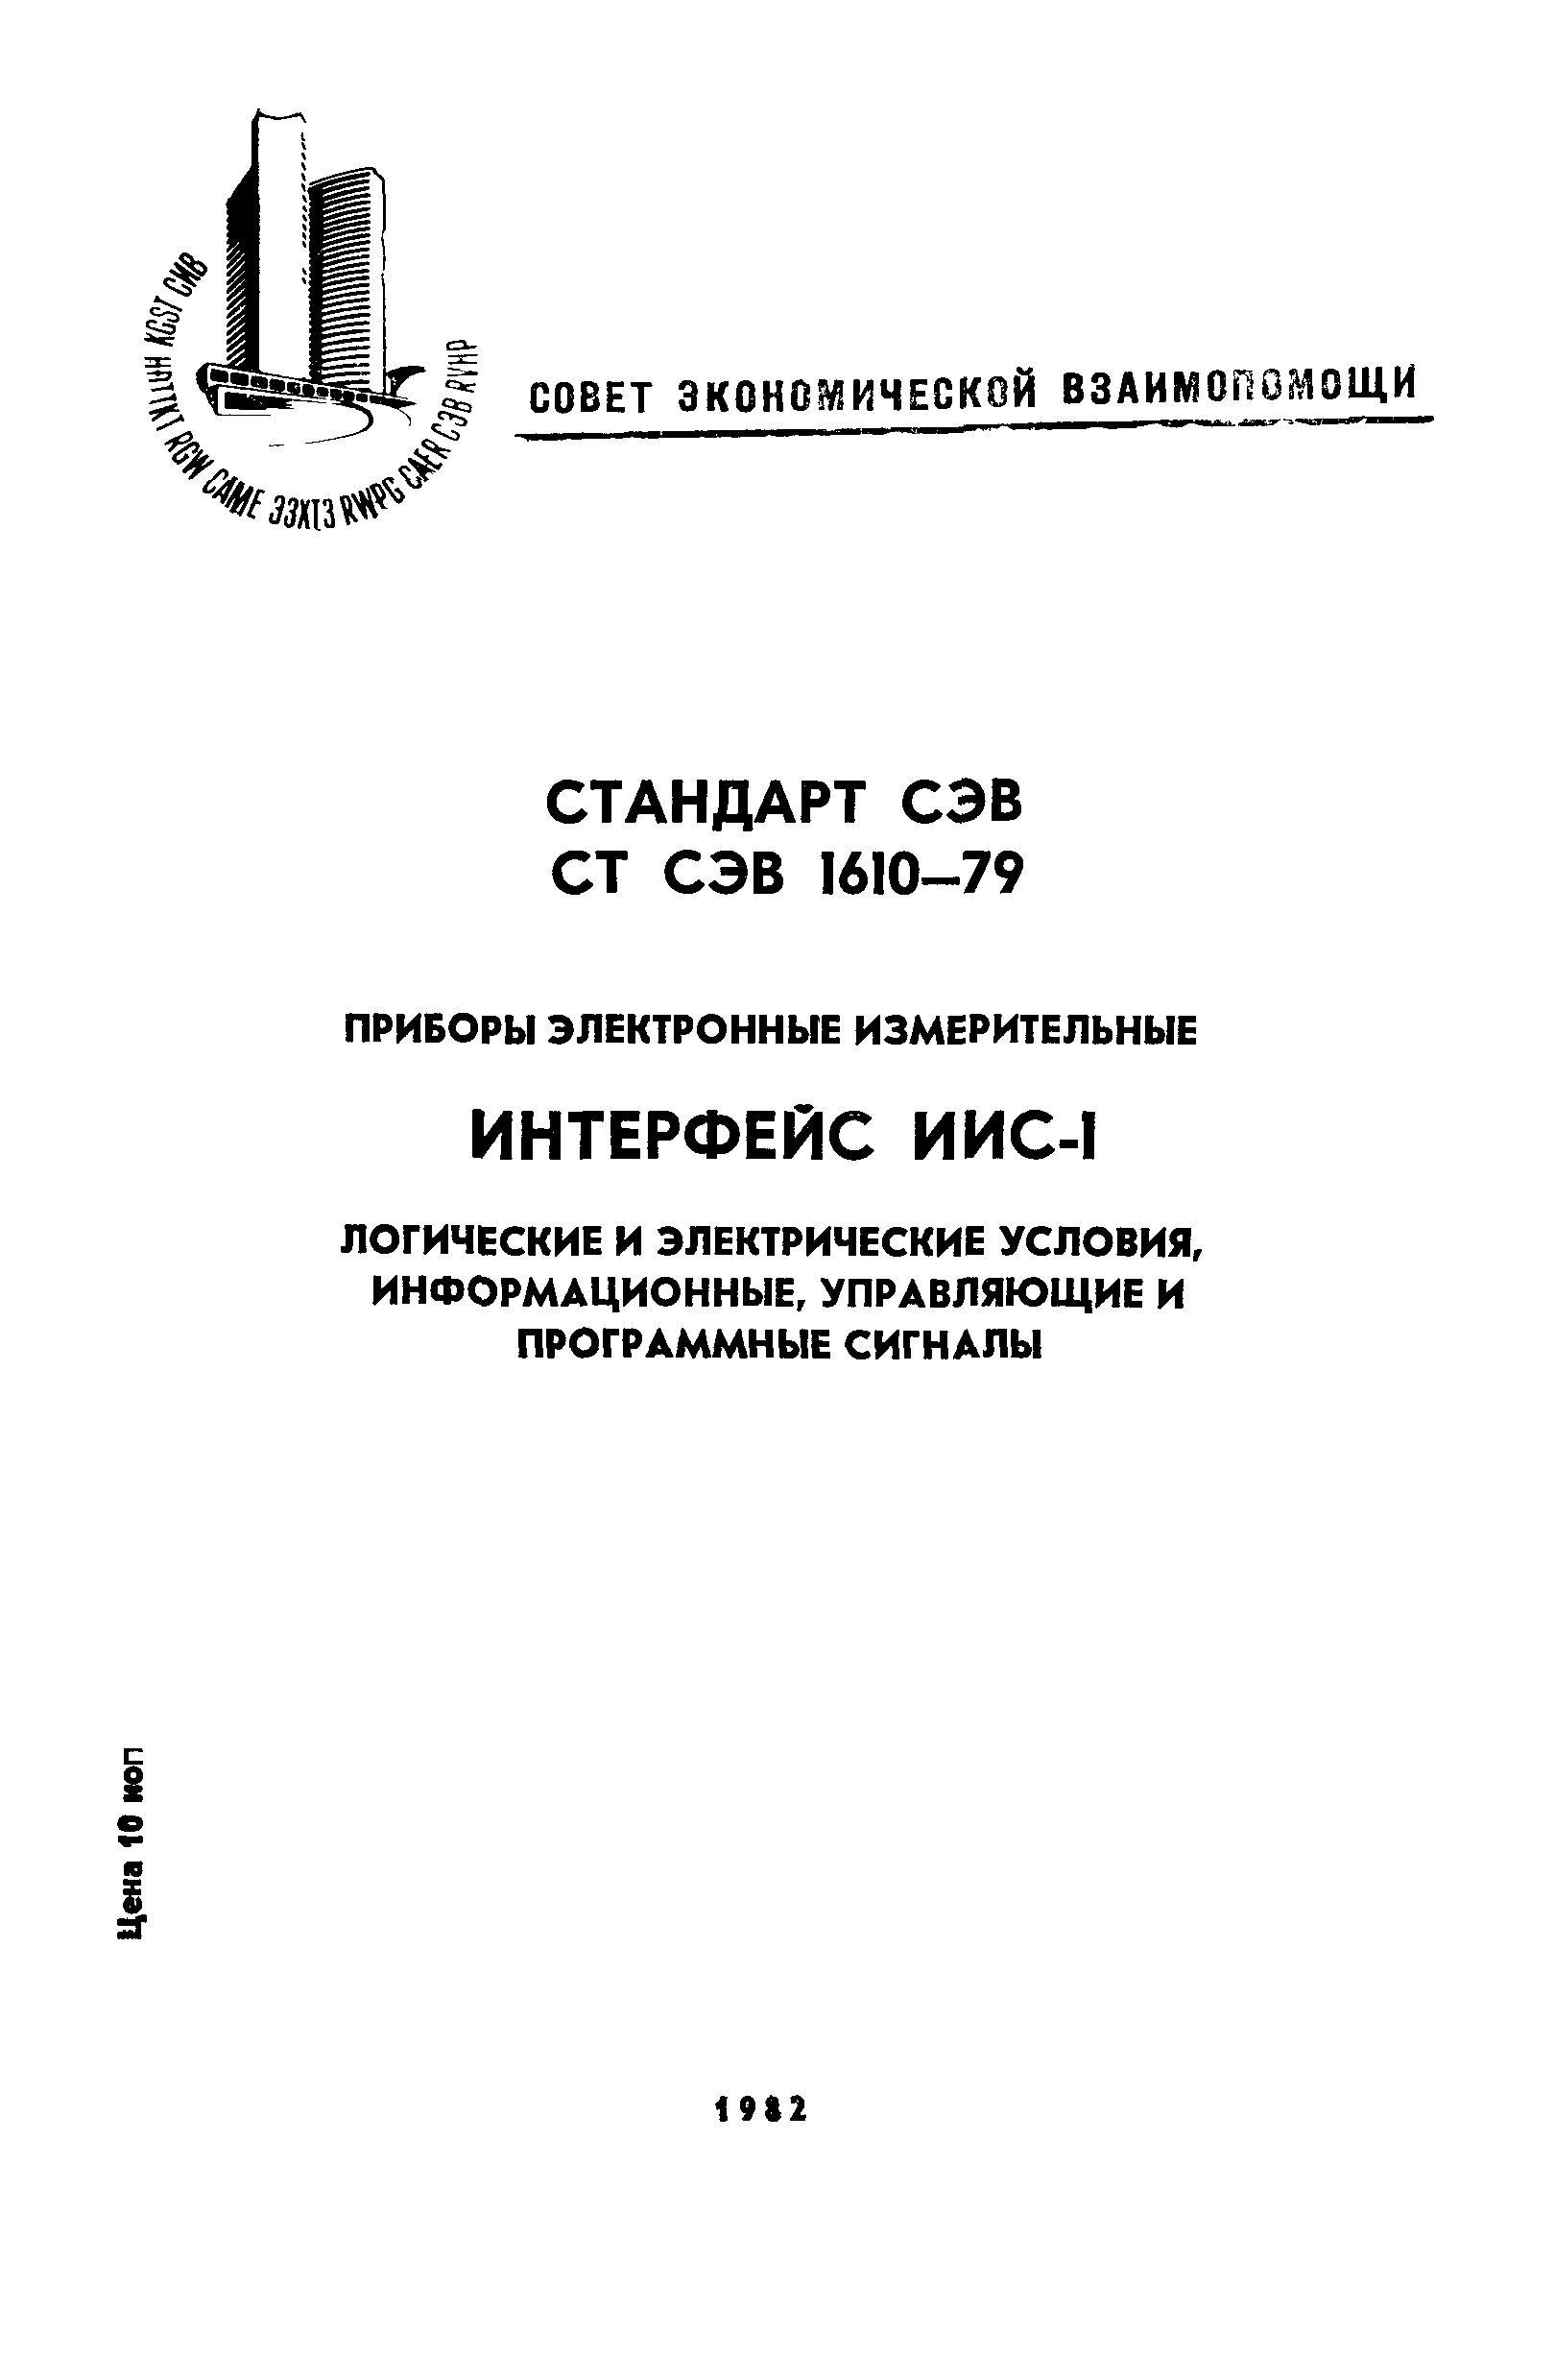 СТ СЭВ 1610-79